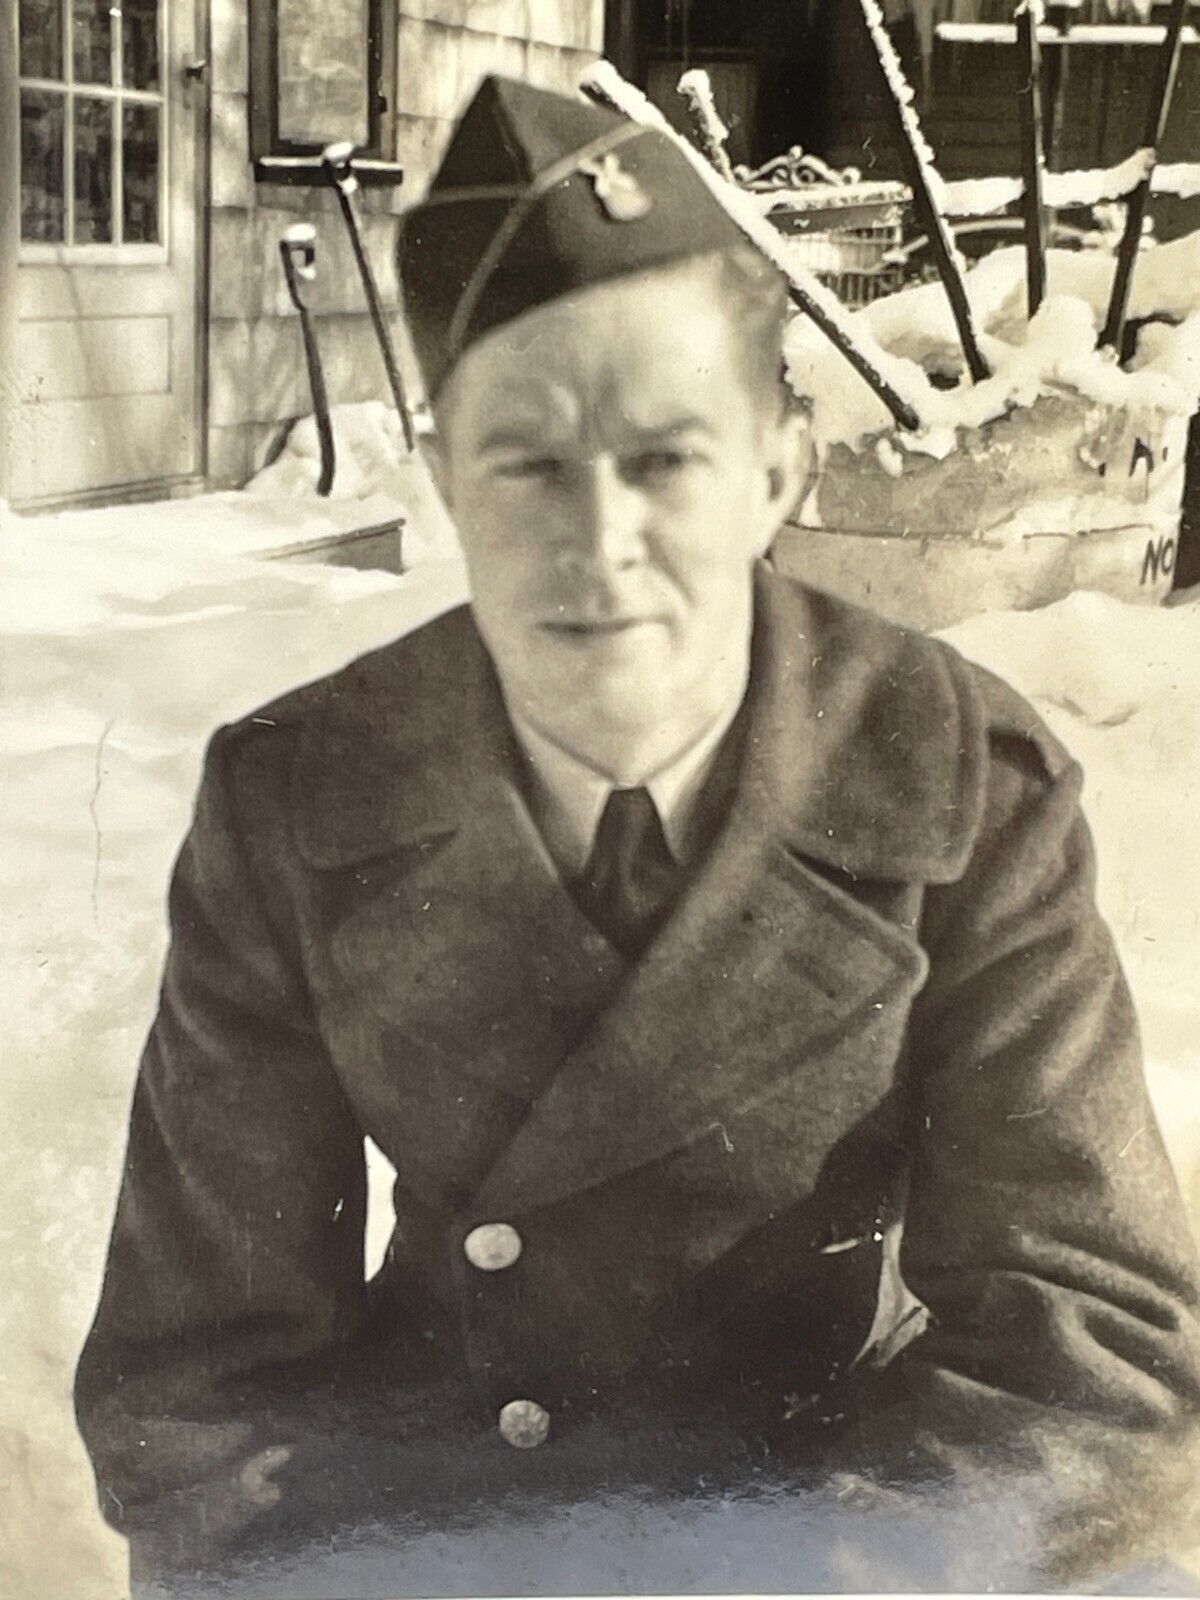 XF Photograph Close Up Portrait Handsome Man Soldier Military Uniform Snow 1940s